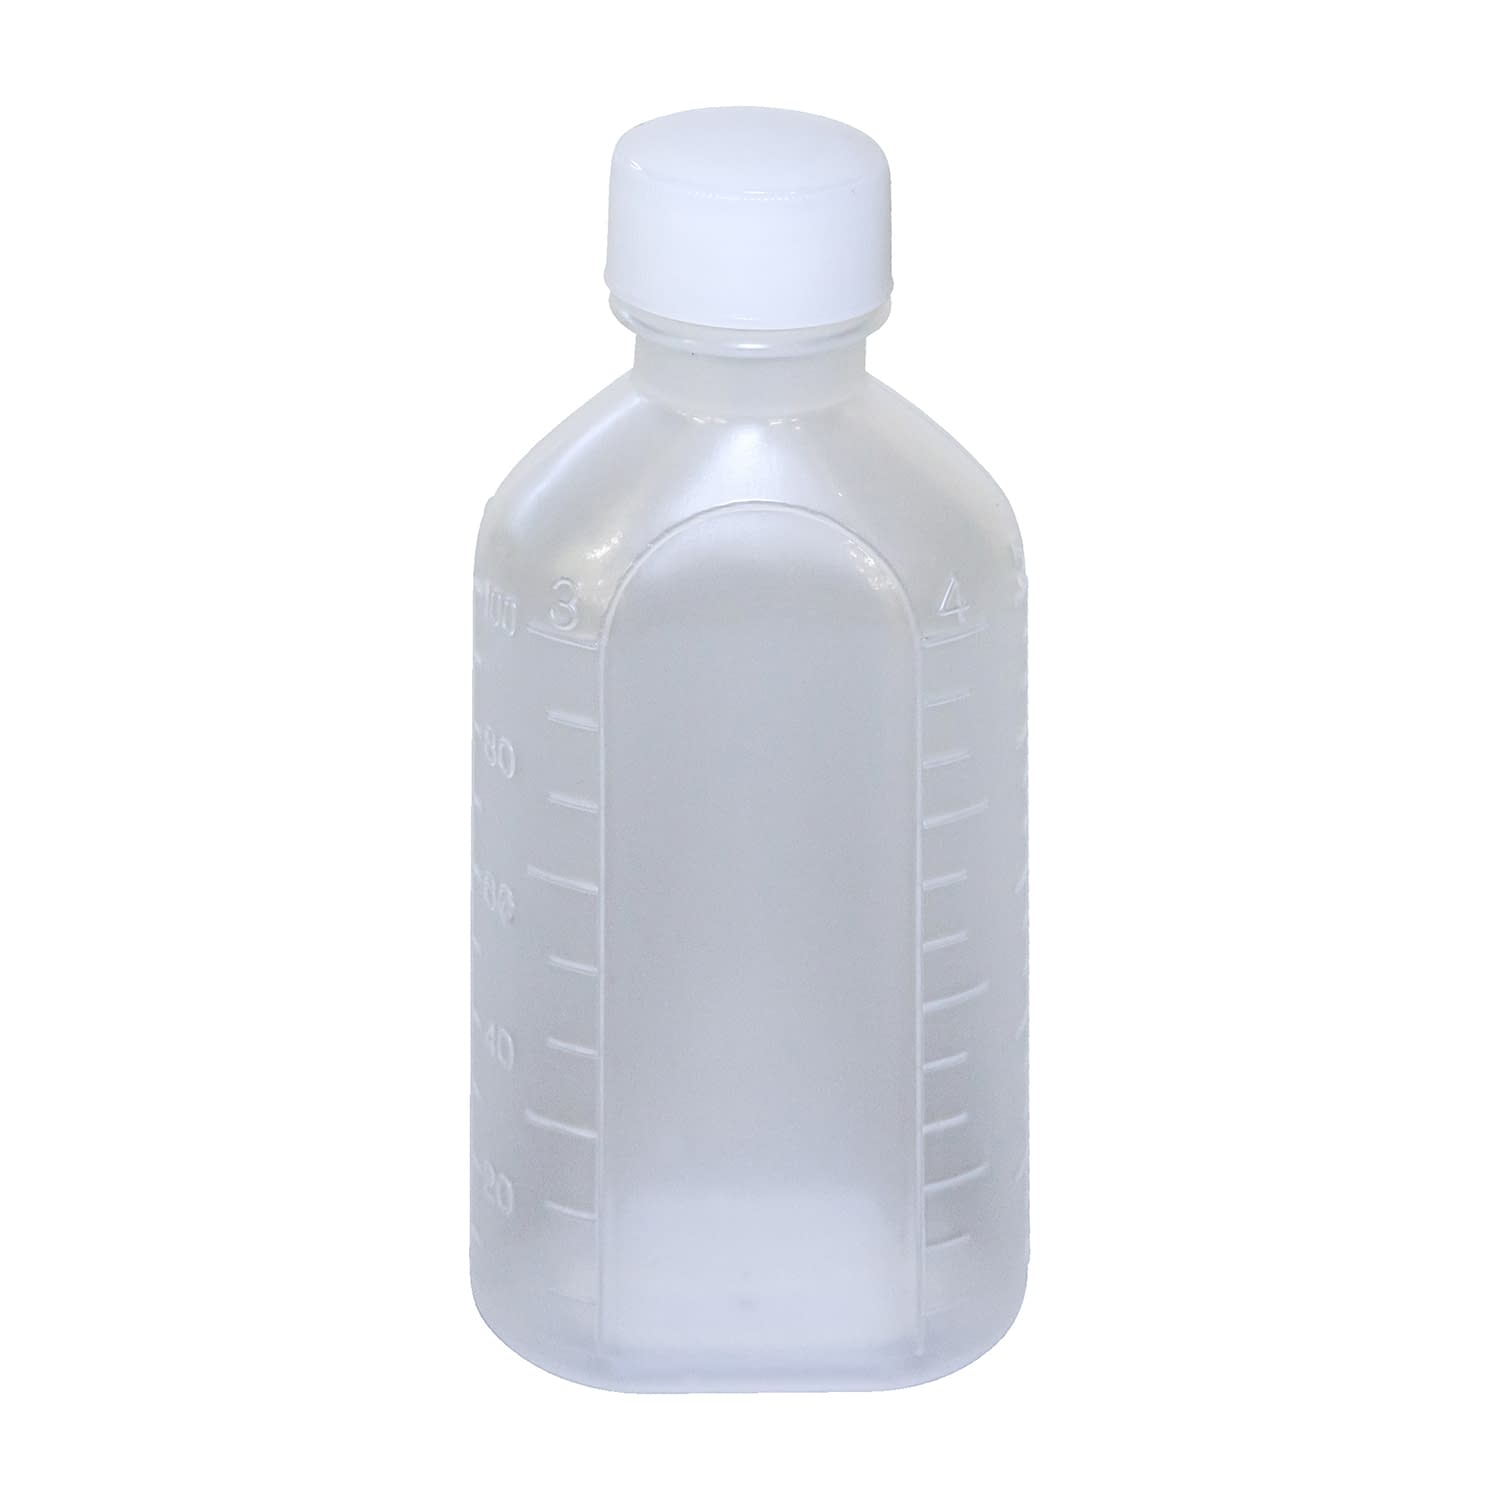 投薬瓶ＰＰＢ（滅菌済） 100CC(10ﾎﾝX20ﾌｸﾛｲﾘ) キャップ：白ＰＰ100cc白・PP【エムアイケミカル】FALSE(08-2855-03-06)